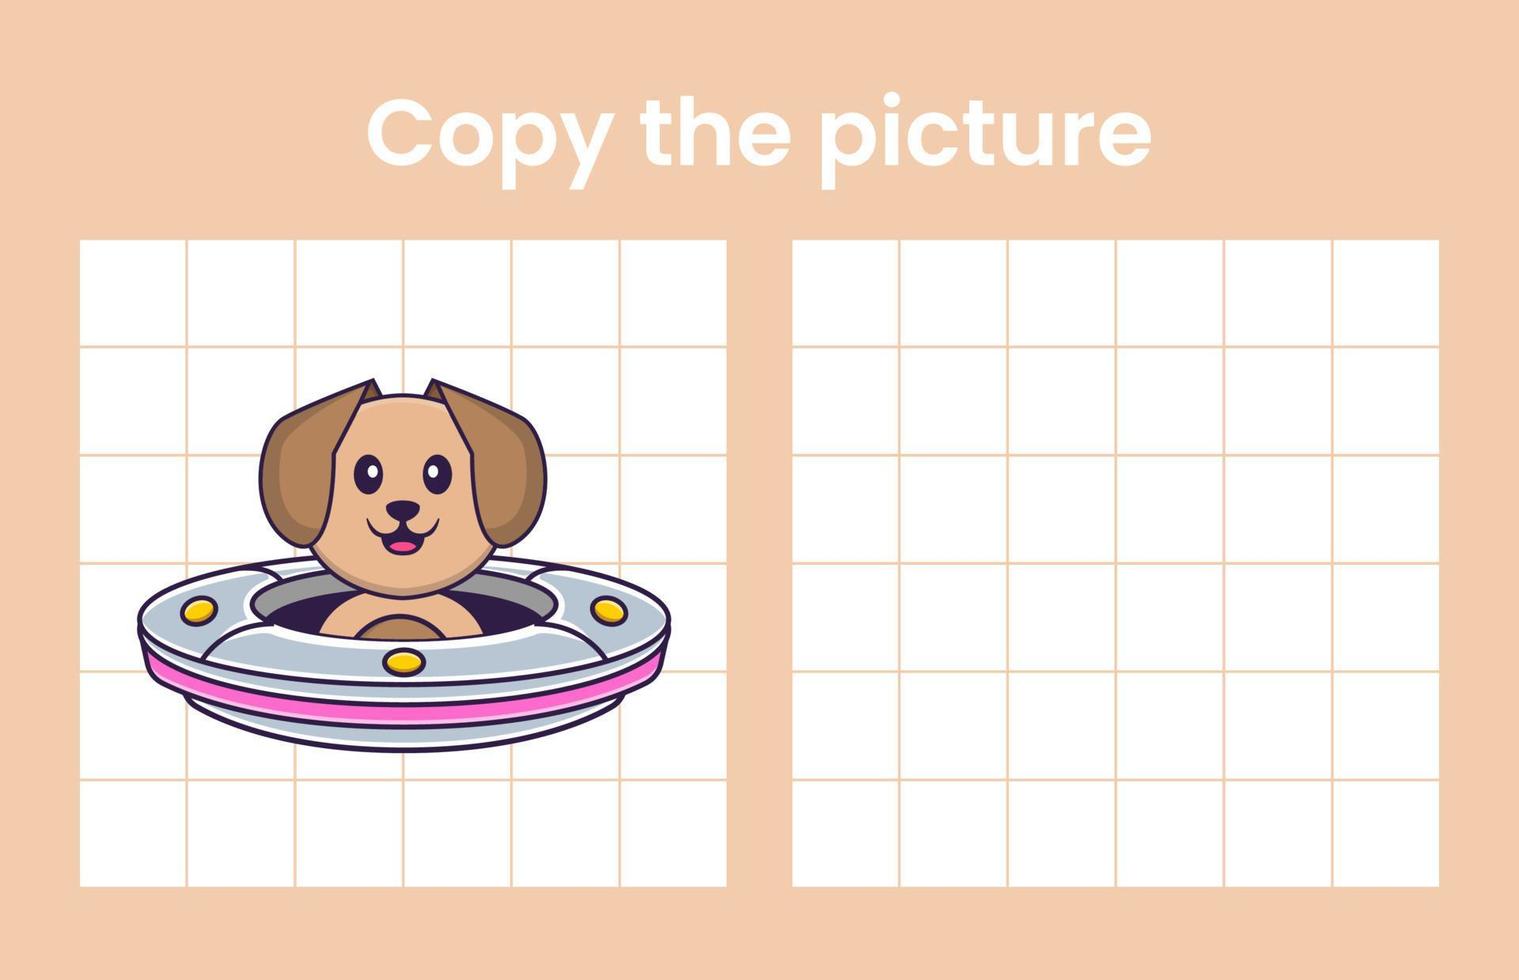 copia l'immagine di un cane carino. gioco educativo per bambini. illustrazione vettoriale dei cartoni animati